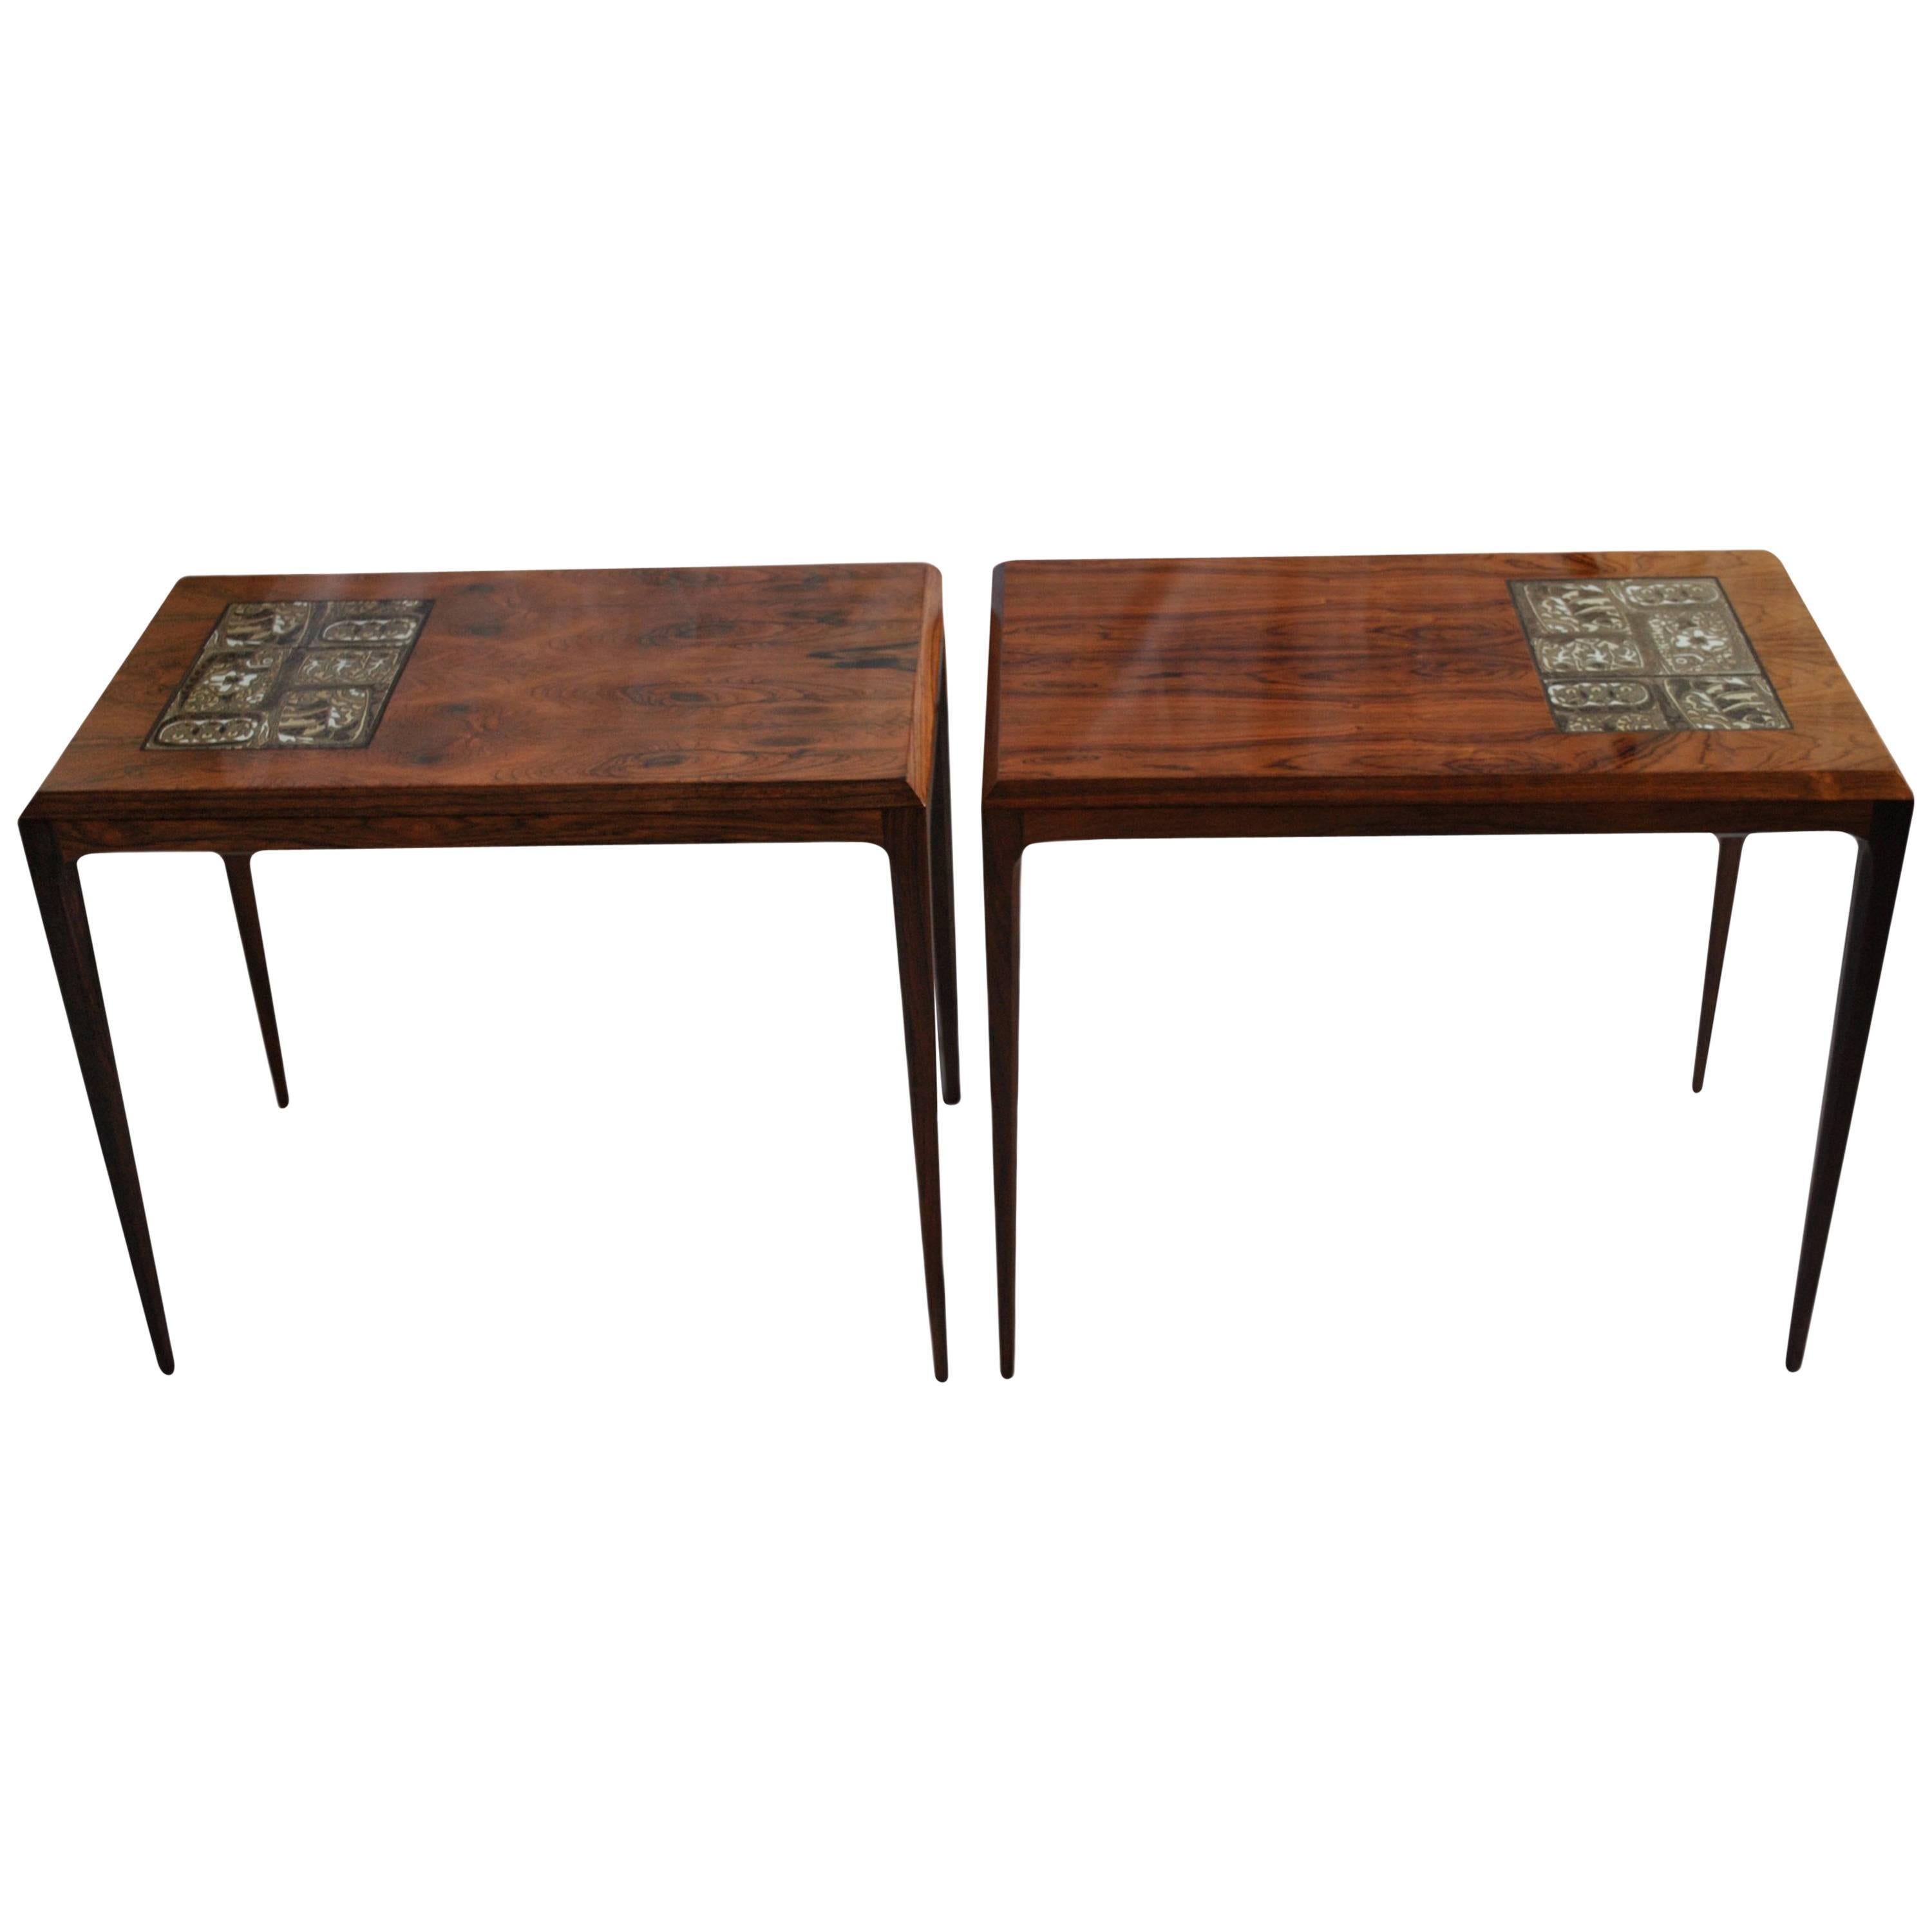 Pair of Midcentury Rosewood Tables by Johannes Andersen